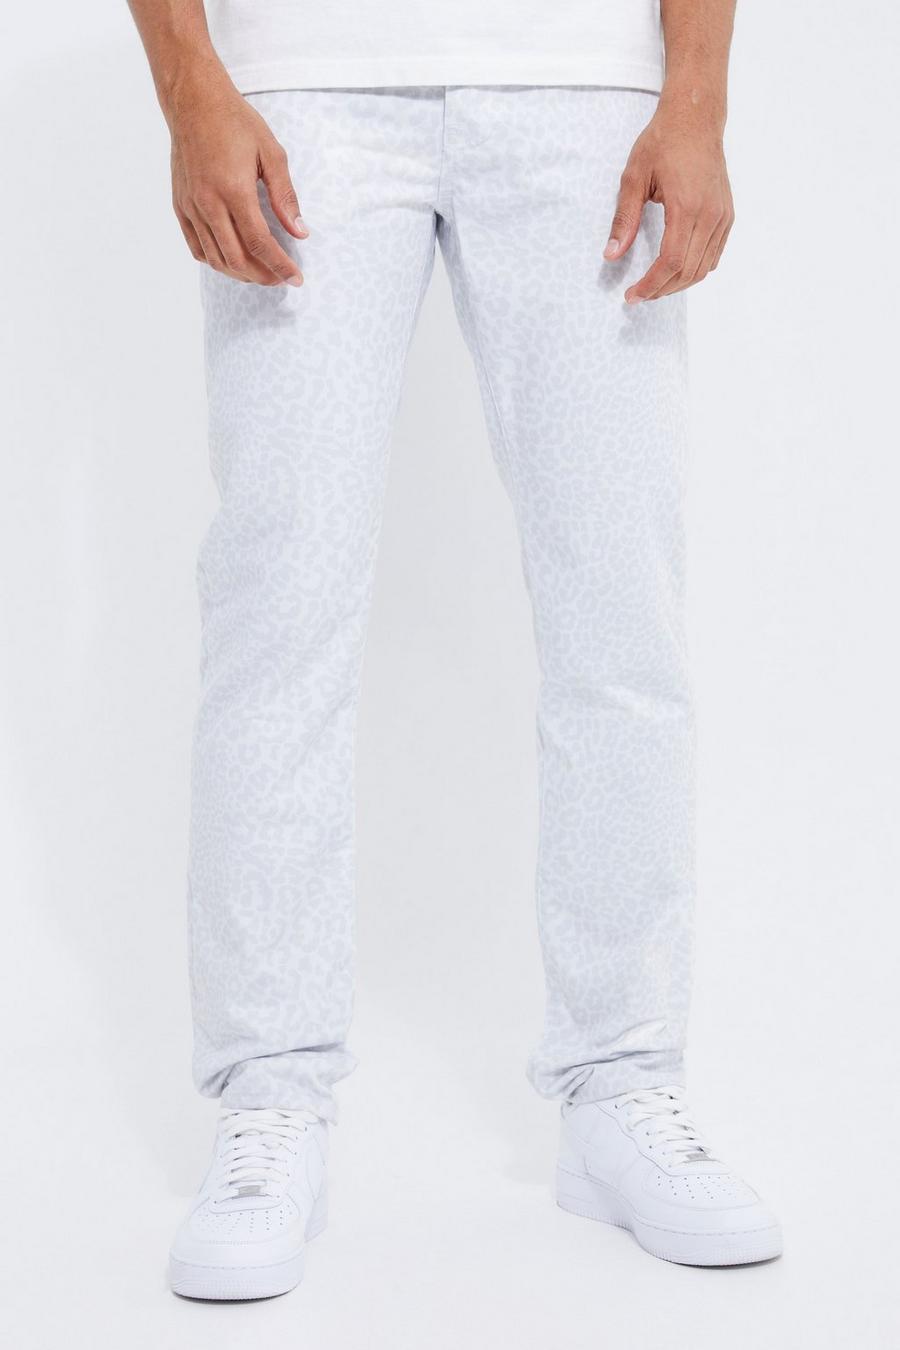 אפור gris ג'ינס בגזרה ישרה עם הדפס חיות חוזר, לגברים גבוהים